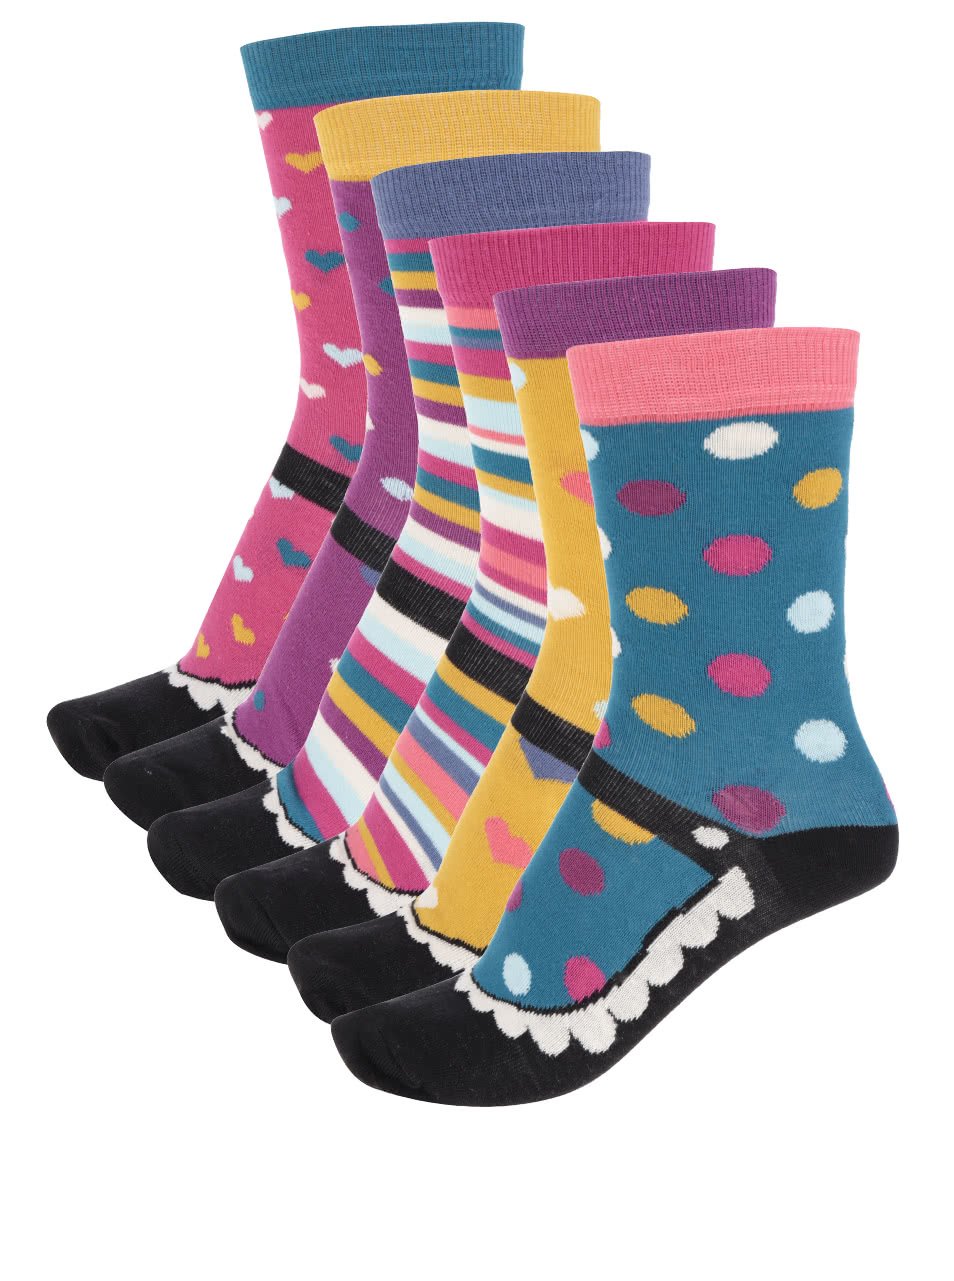 Sada šesti barevných dámských ponožek Oddsocks Mary